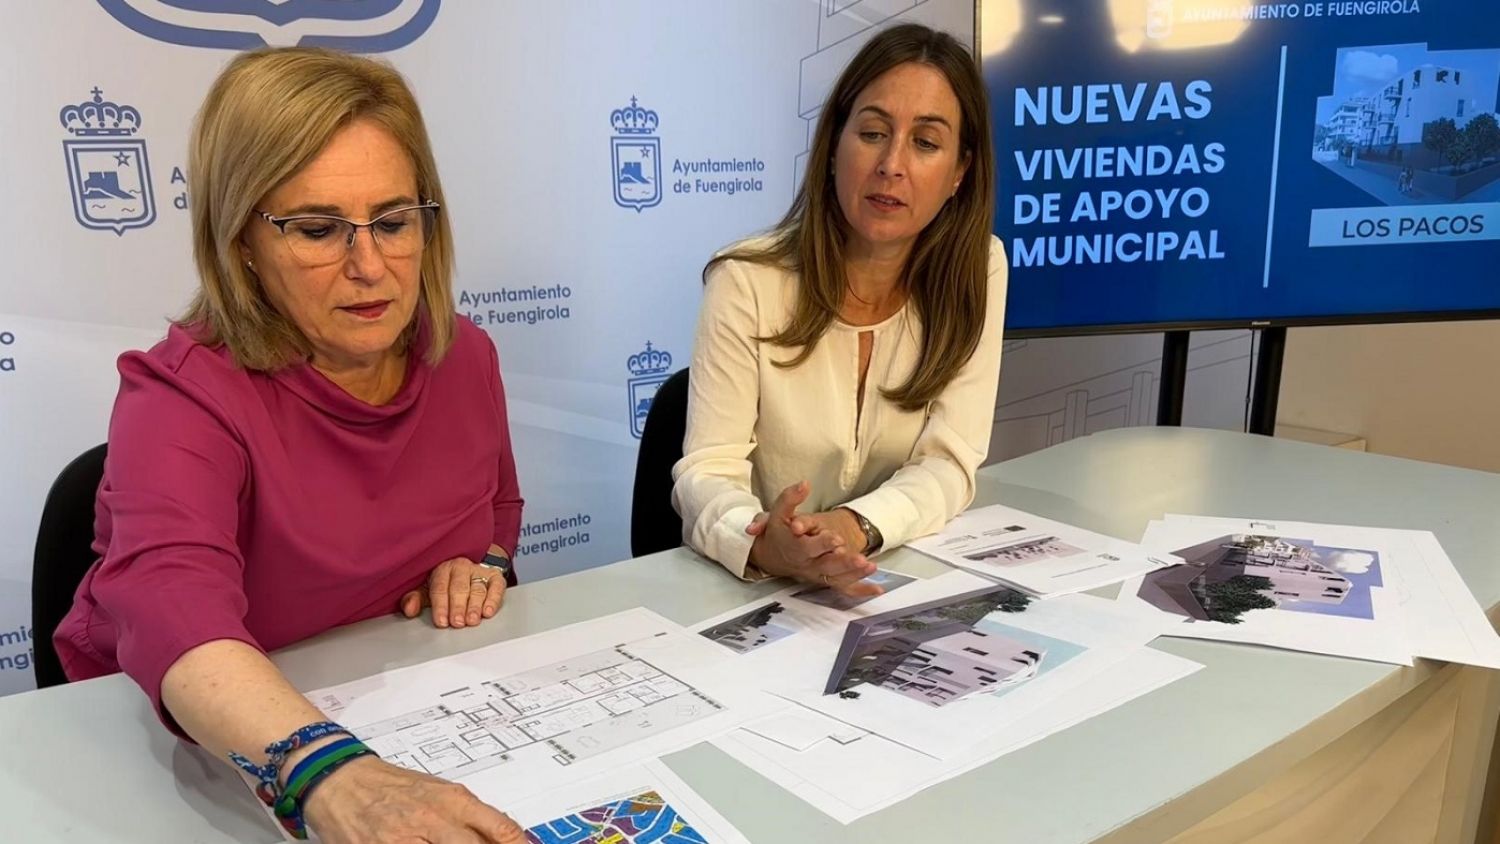 El Ayuntamiento de Fuengirola construirá quince Viviendas de Apoyo Municipal en Los Pacos